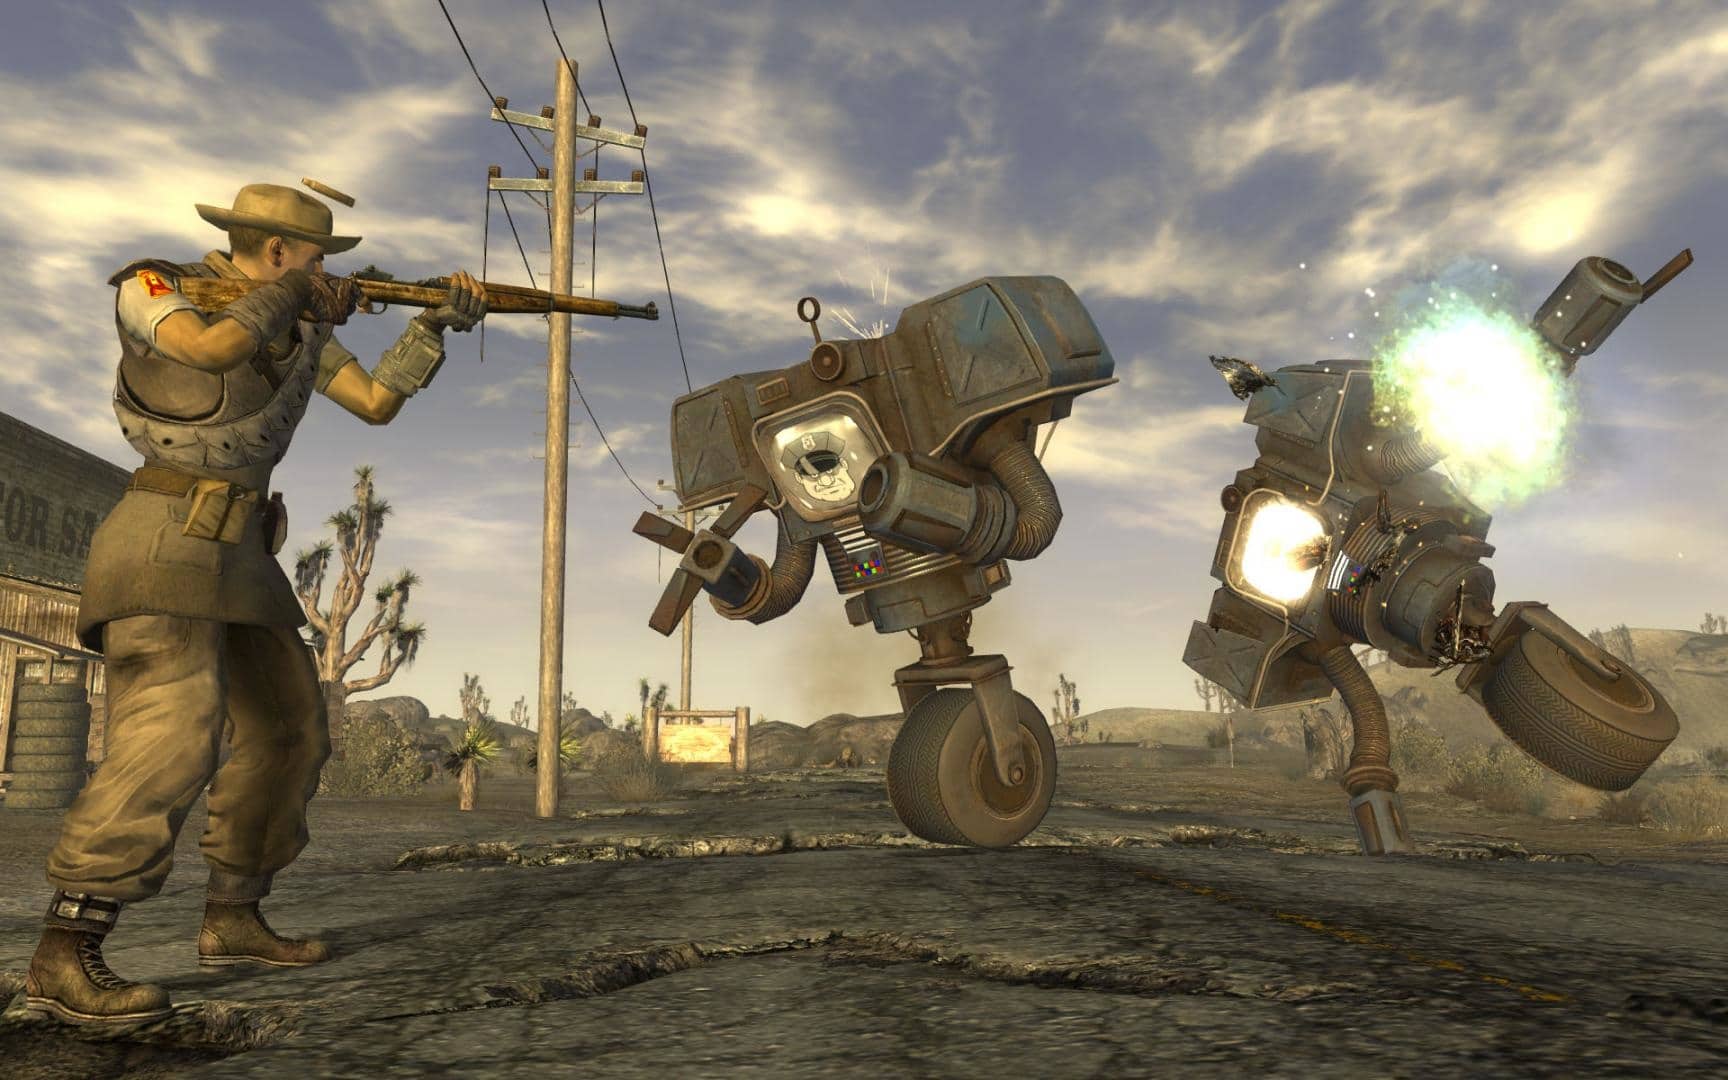 (Druhý hod si u Obsidianu také vysloužil velký respekt Fallout: New Vegas je kultovní hra, ale trpí chybami. Vydavatel Bethesda pravděpodobně stanovil příliš krátký termín dokončení.